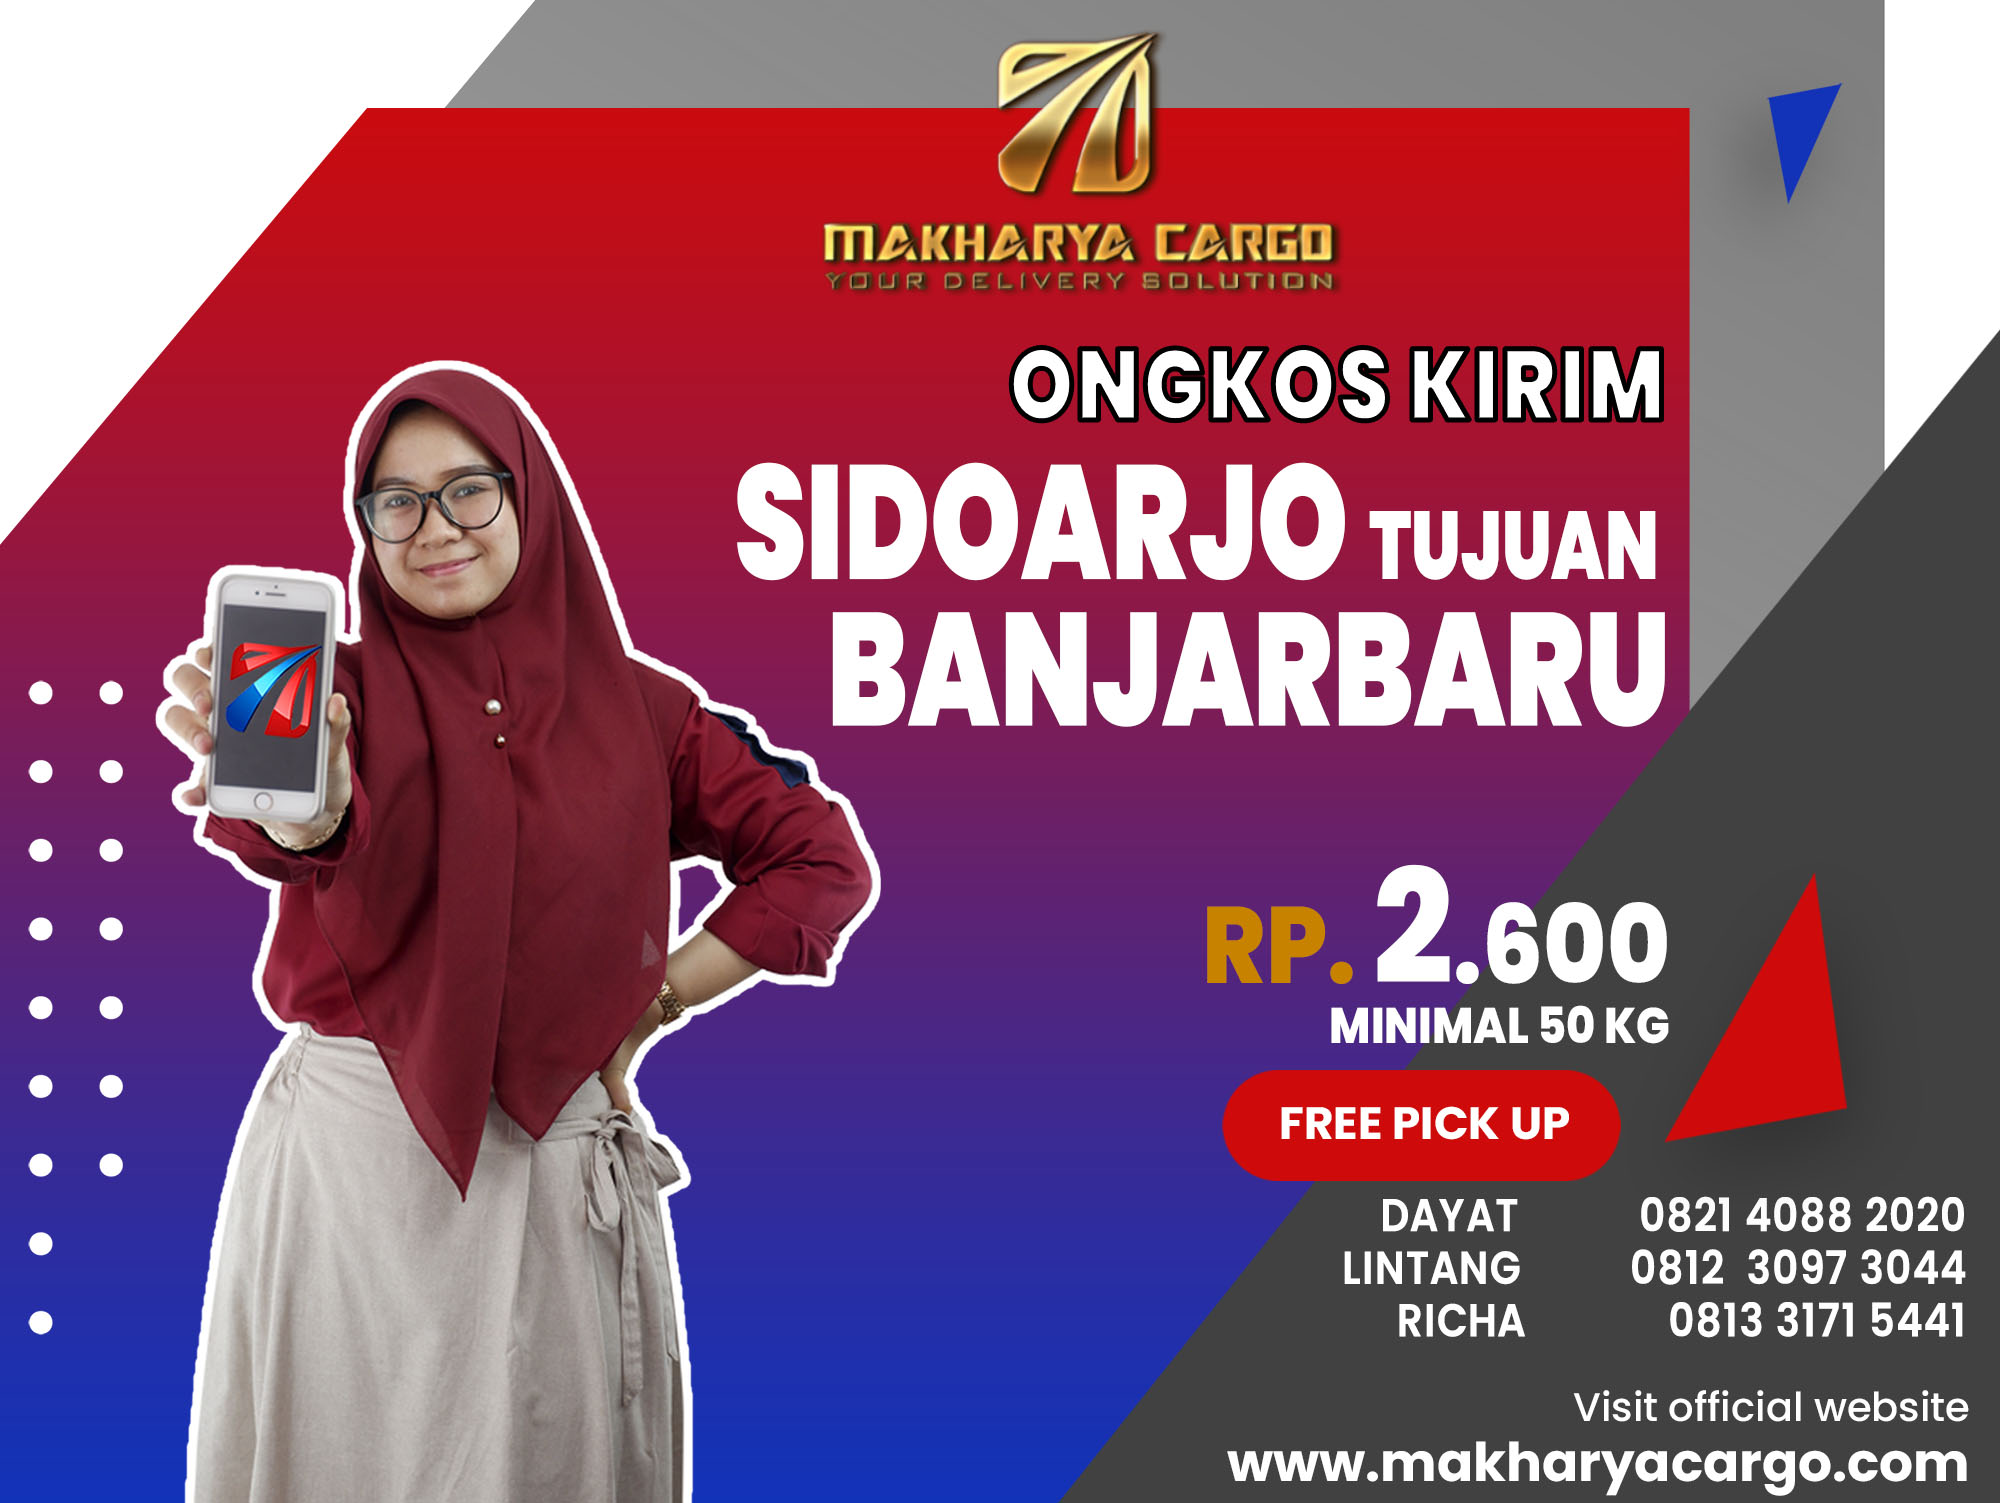 Ongkos Kirim Sidoarjo Banjarbaru